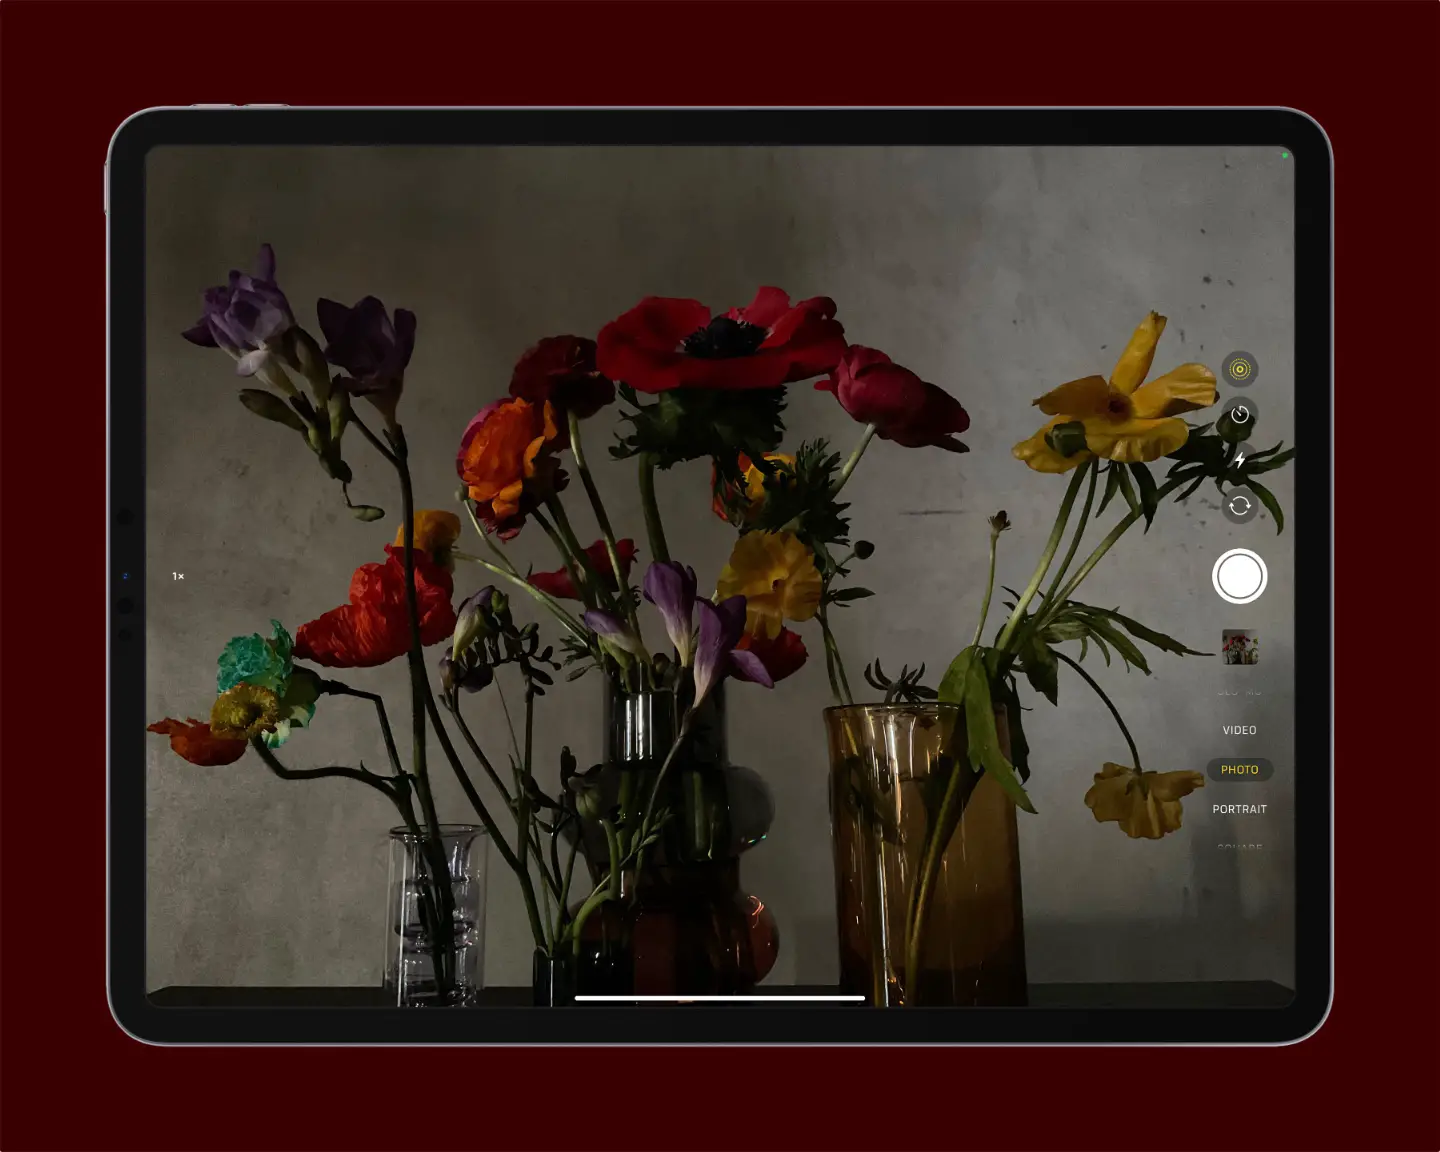 New iPad Pro M1 | 12.9-inch Liquid Retina XDR displ